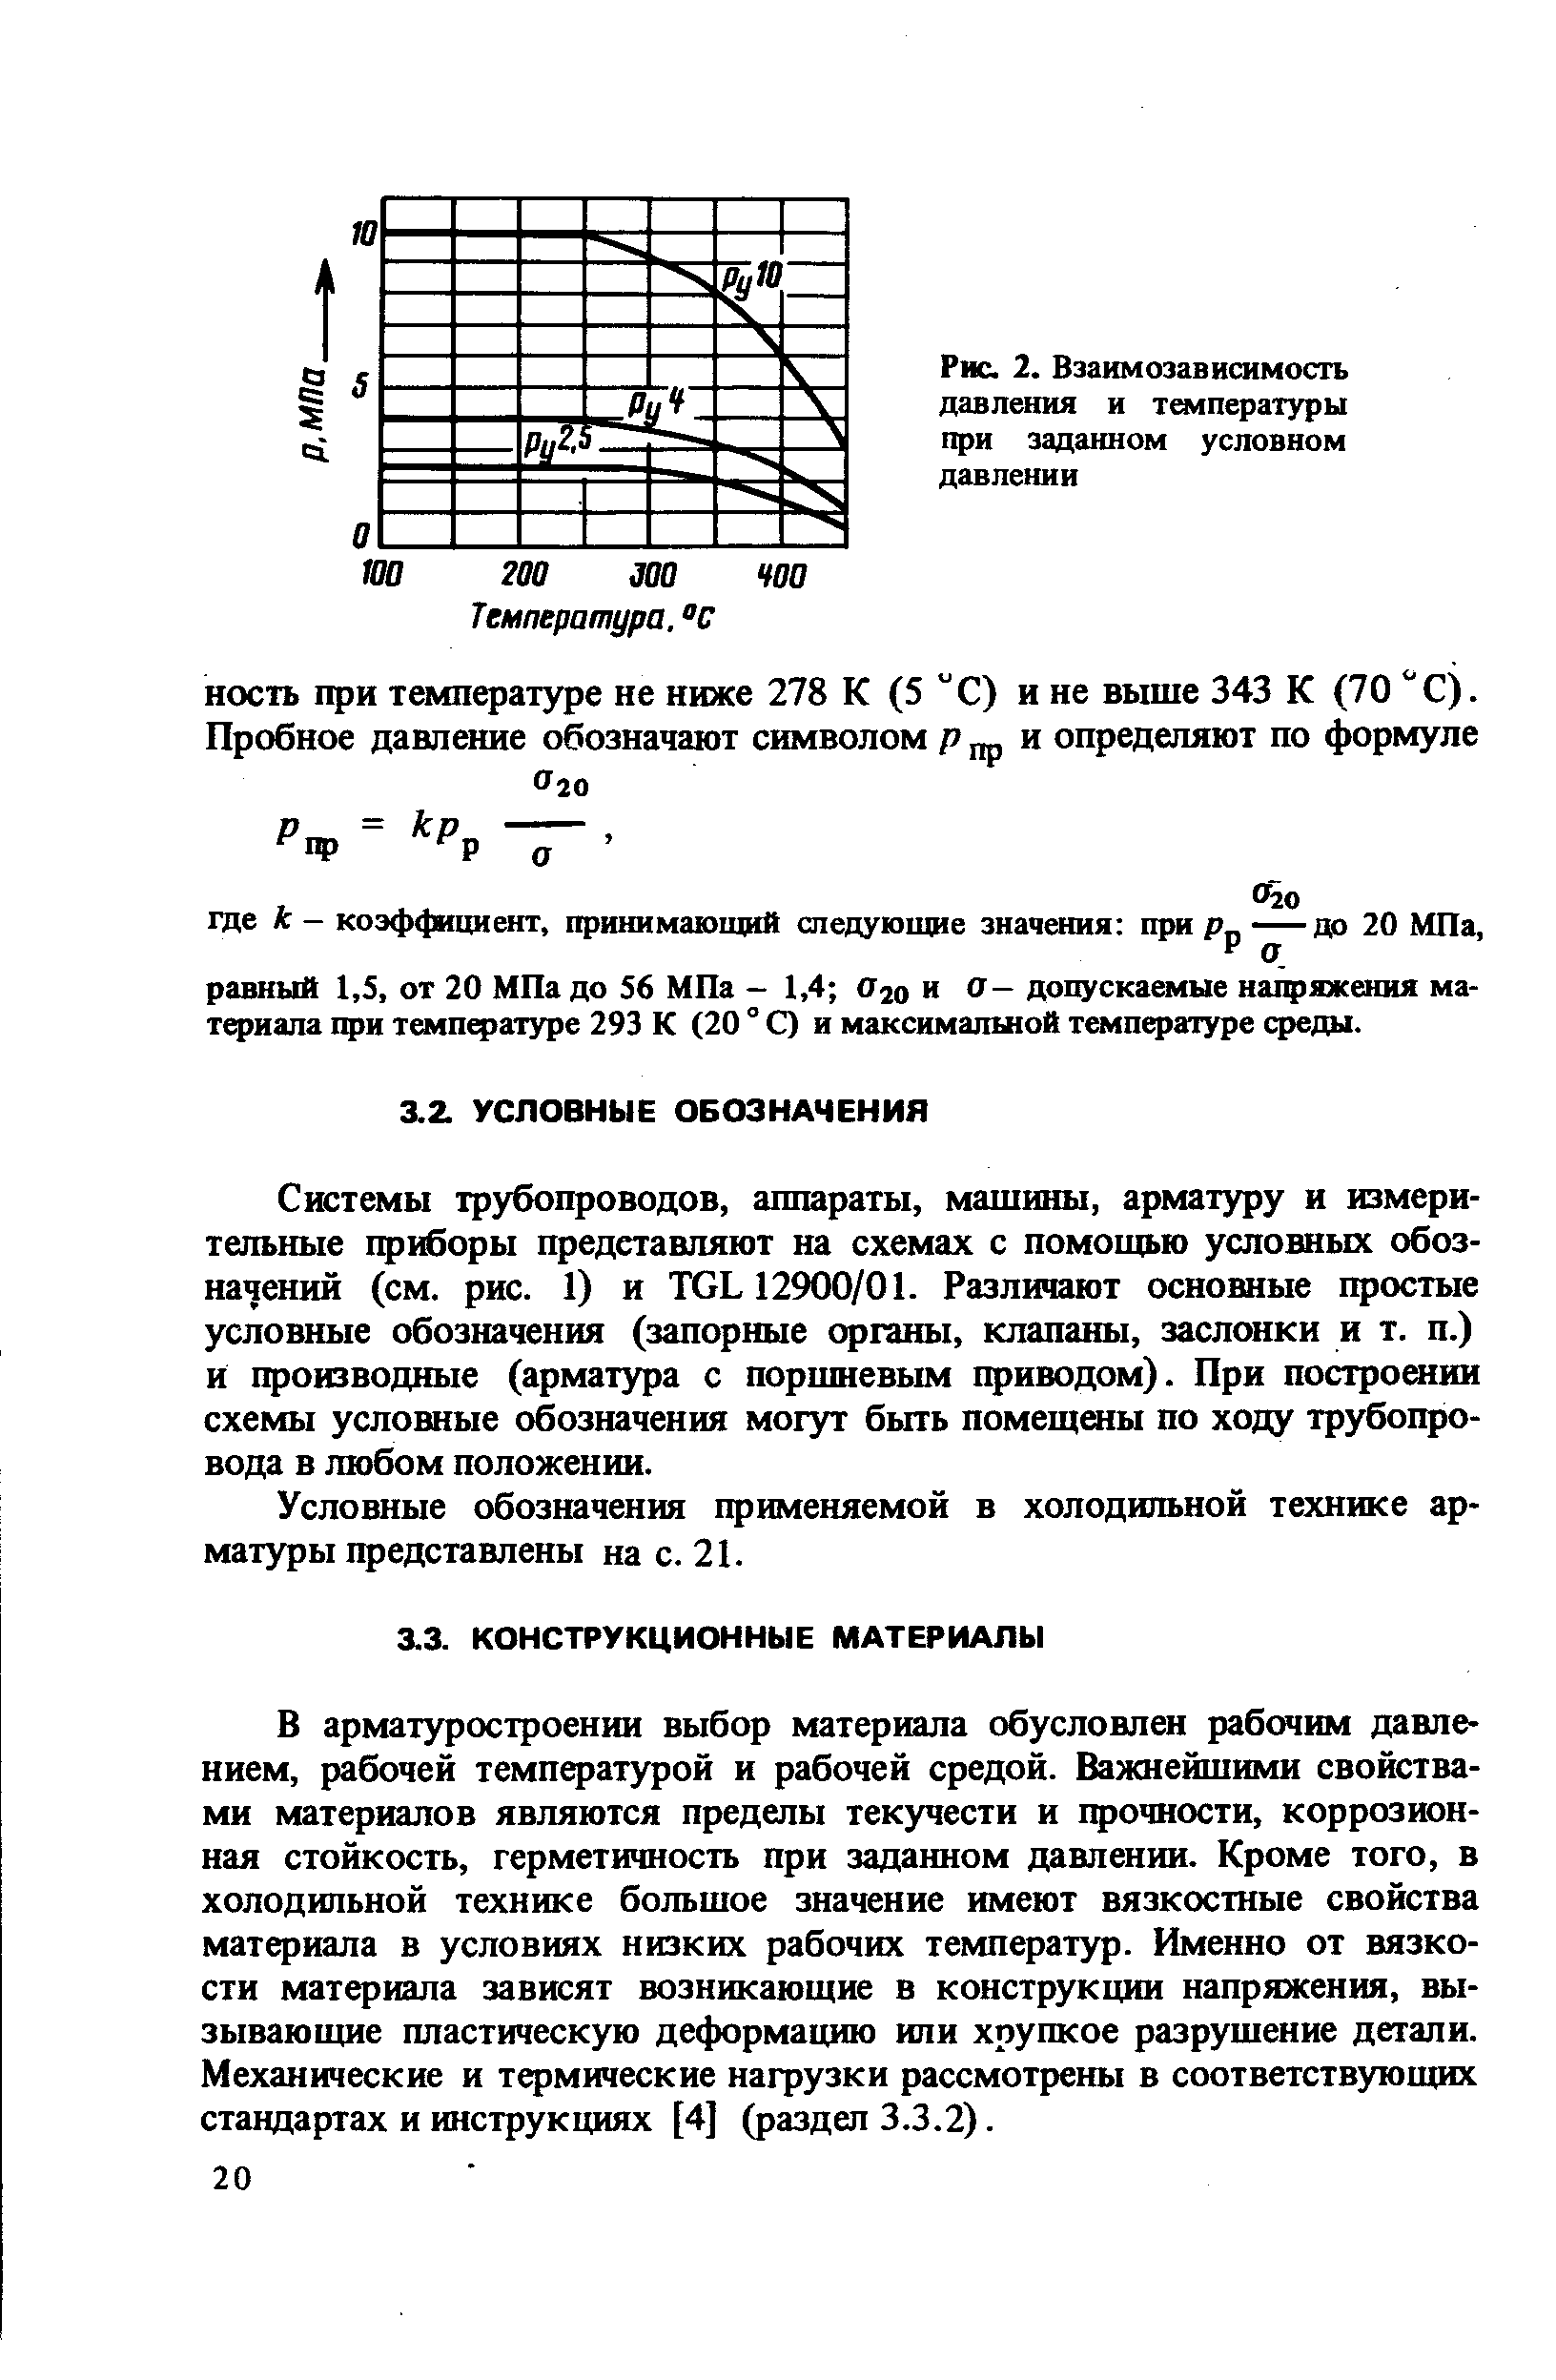 Условные обозначения применяемой в холодильной технике ар-мат)фы представлены на с. 21.